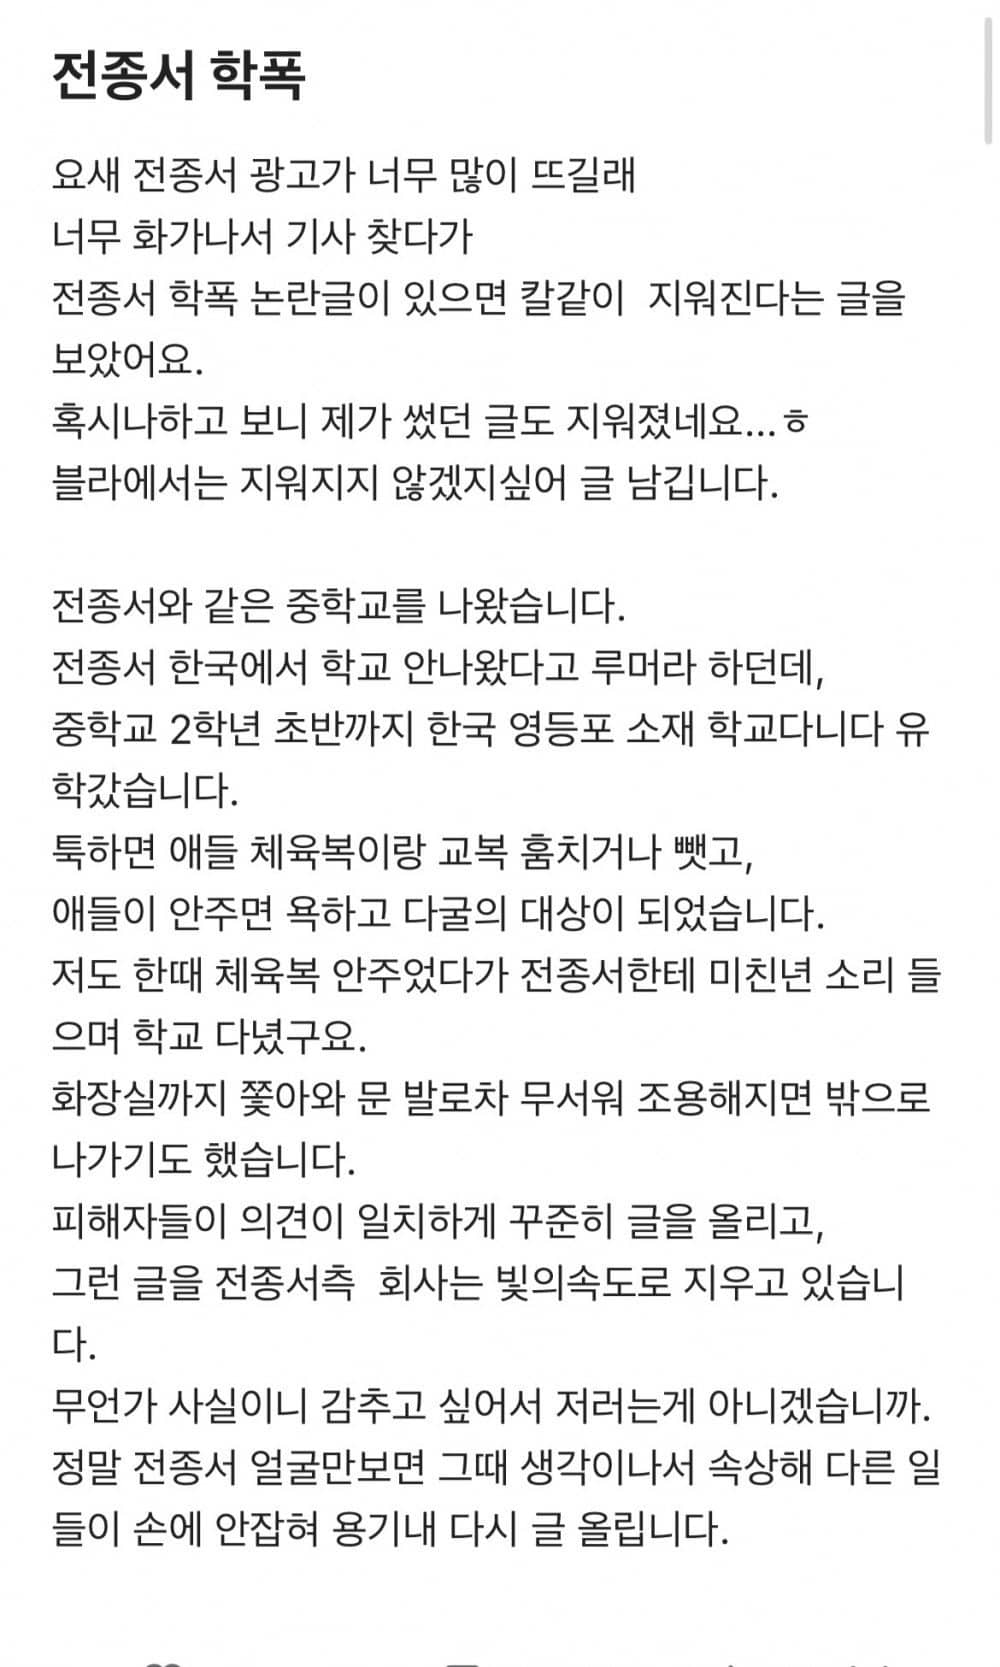 Актрисе Чон Джон Со предъявлены обвинения в школьном издевательстве